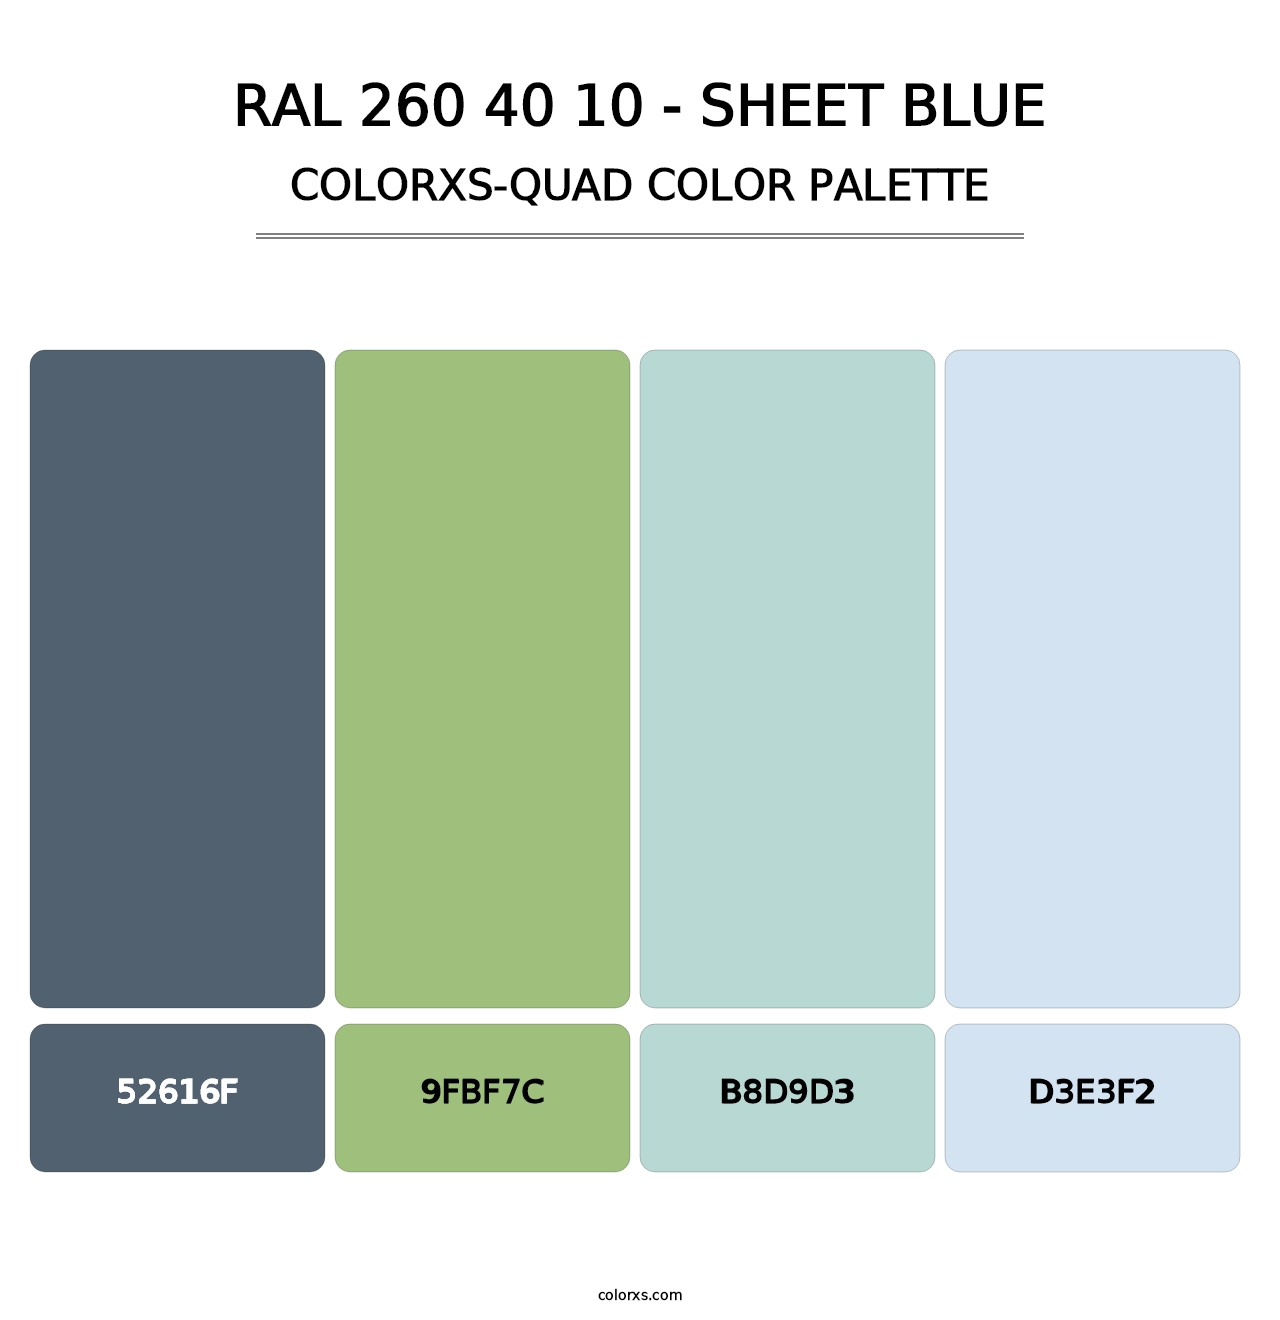 RAL 260 40 10 - Sheet Blue - Colorxs Quad Palette